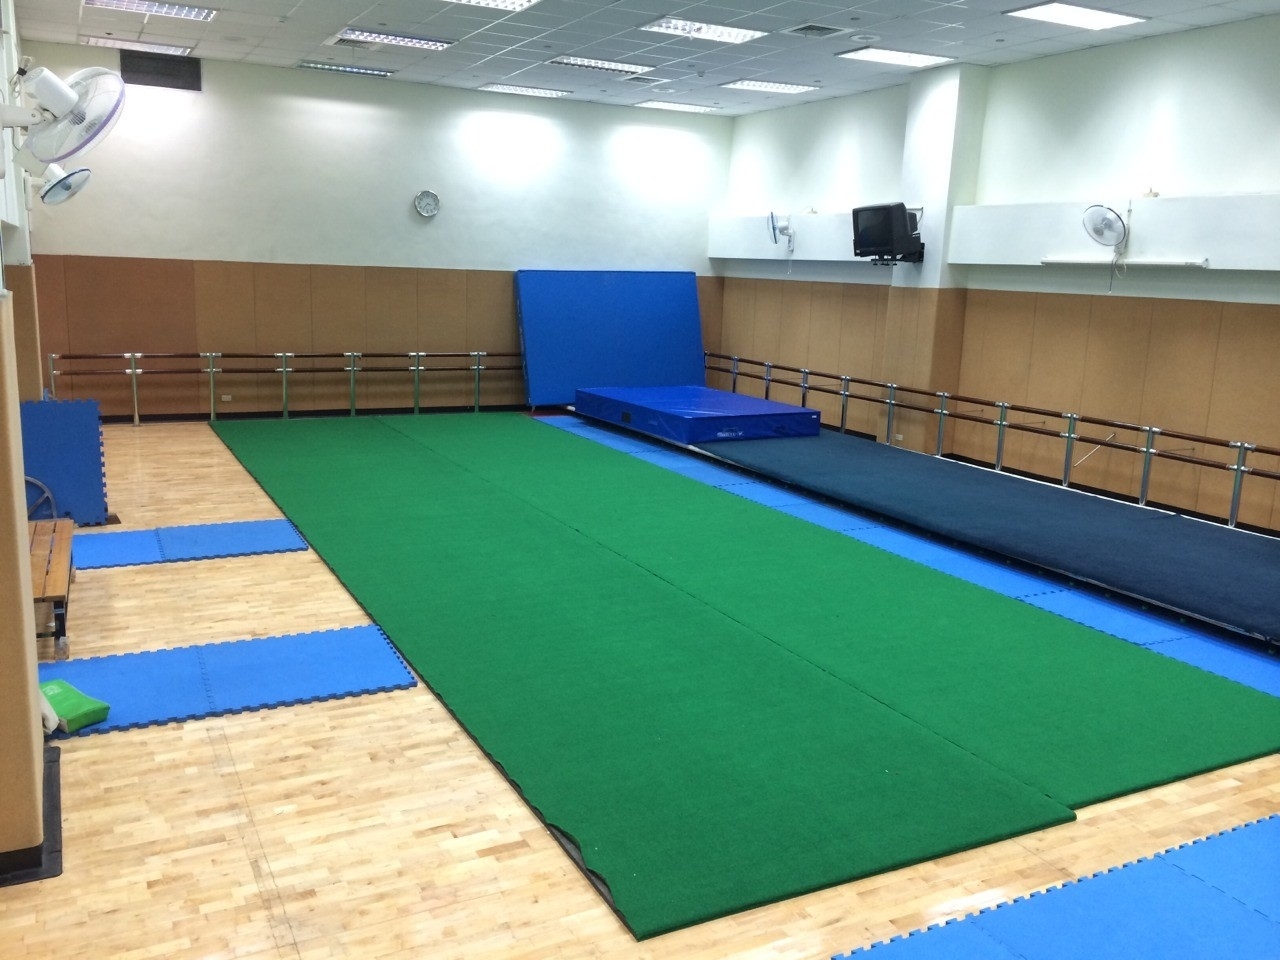 Figure 15. Multifunctional training room